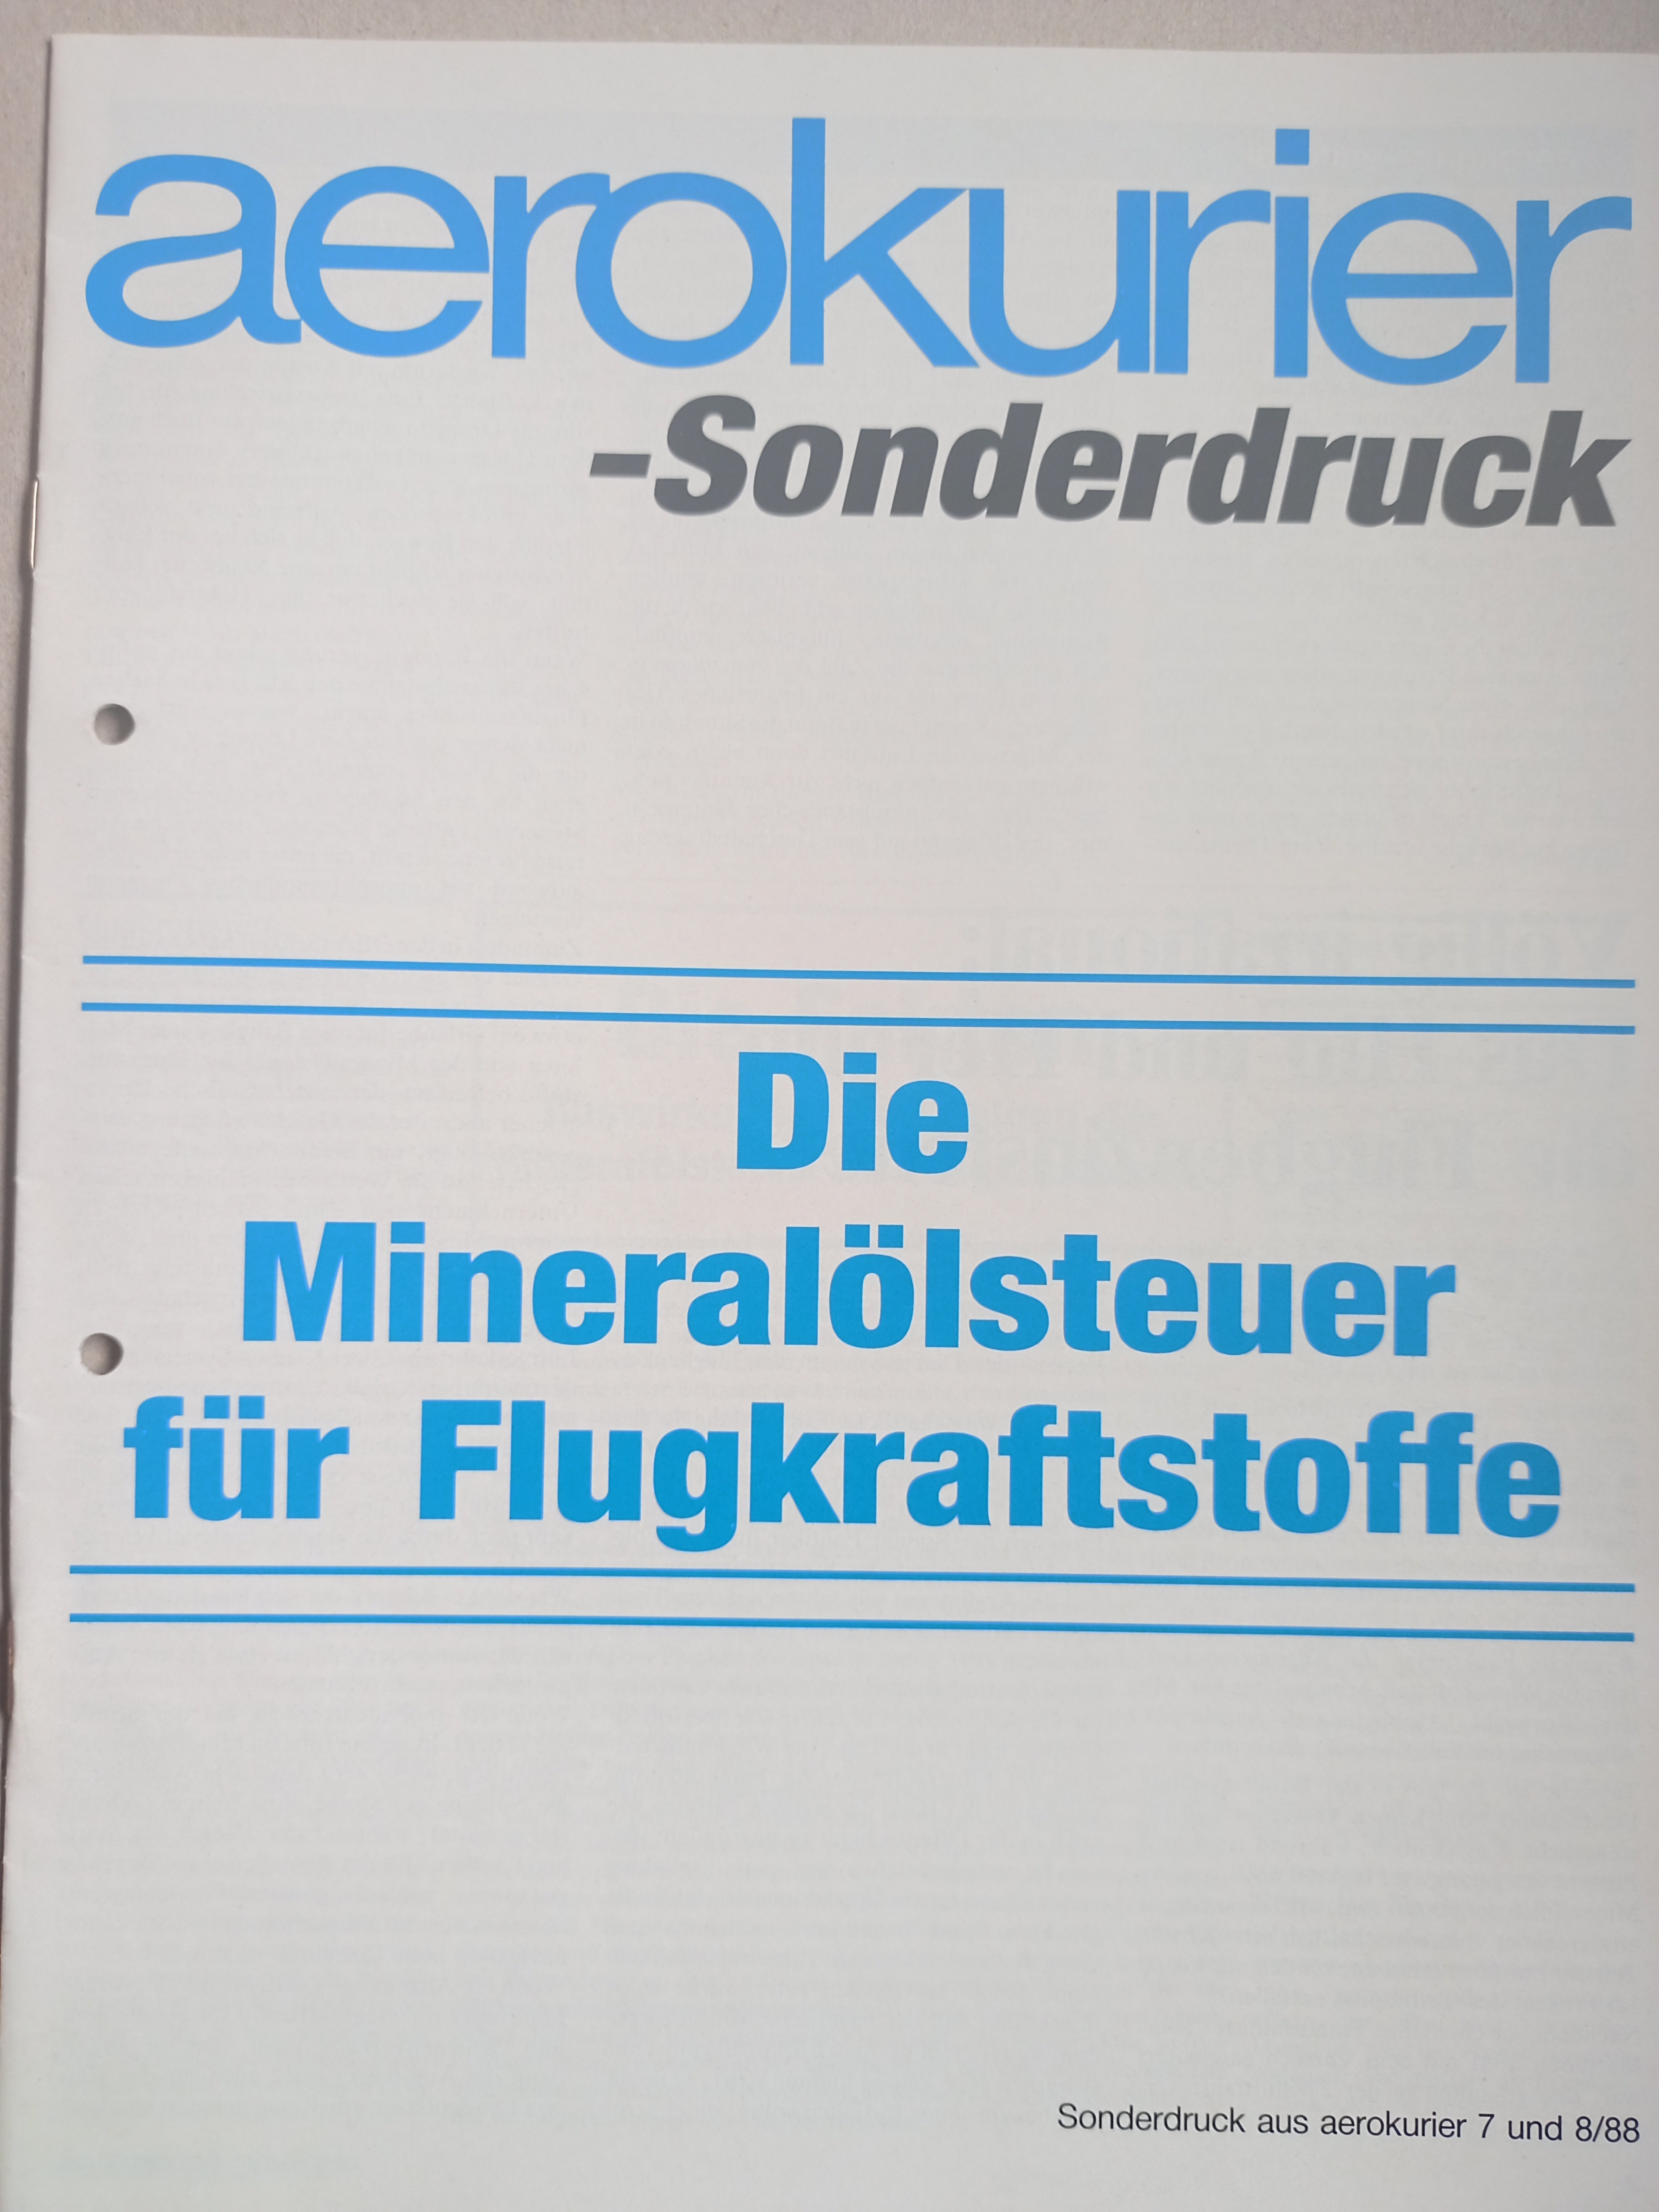 Sonderdruck Aerokurier - Mineralölsteuer (Deutsches Segelflugmuseum mit Modellflug CC BY-NC-SA)